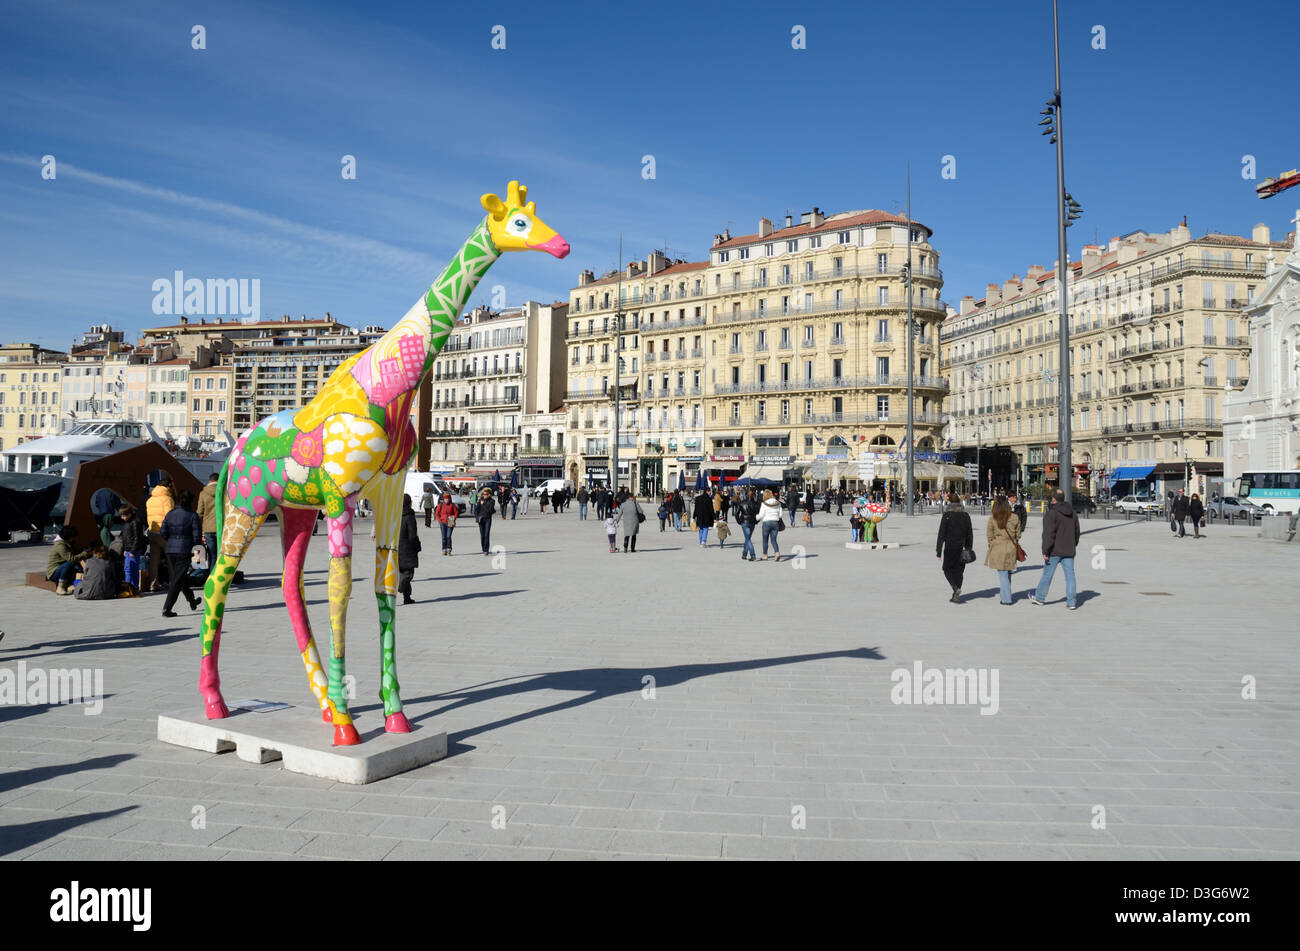 Place publique de la ville et sculpture de Giraffe sur le quai, ou Quayside Quai des Belges Vieux Port ou Vieux Port Marseille Provence France Banque D'Images